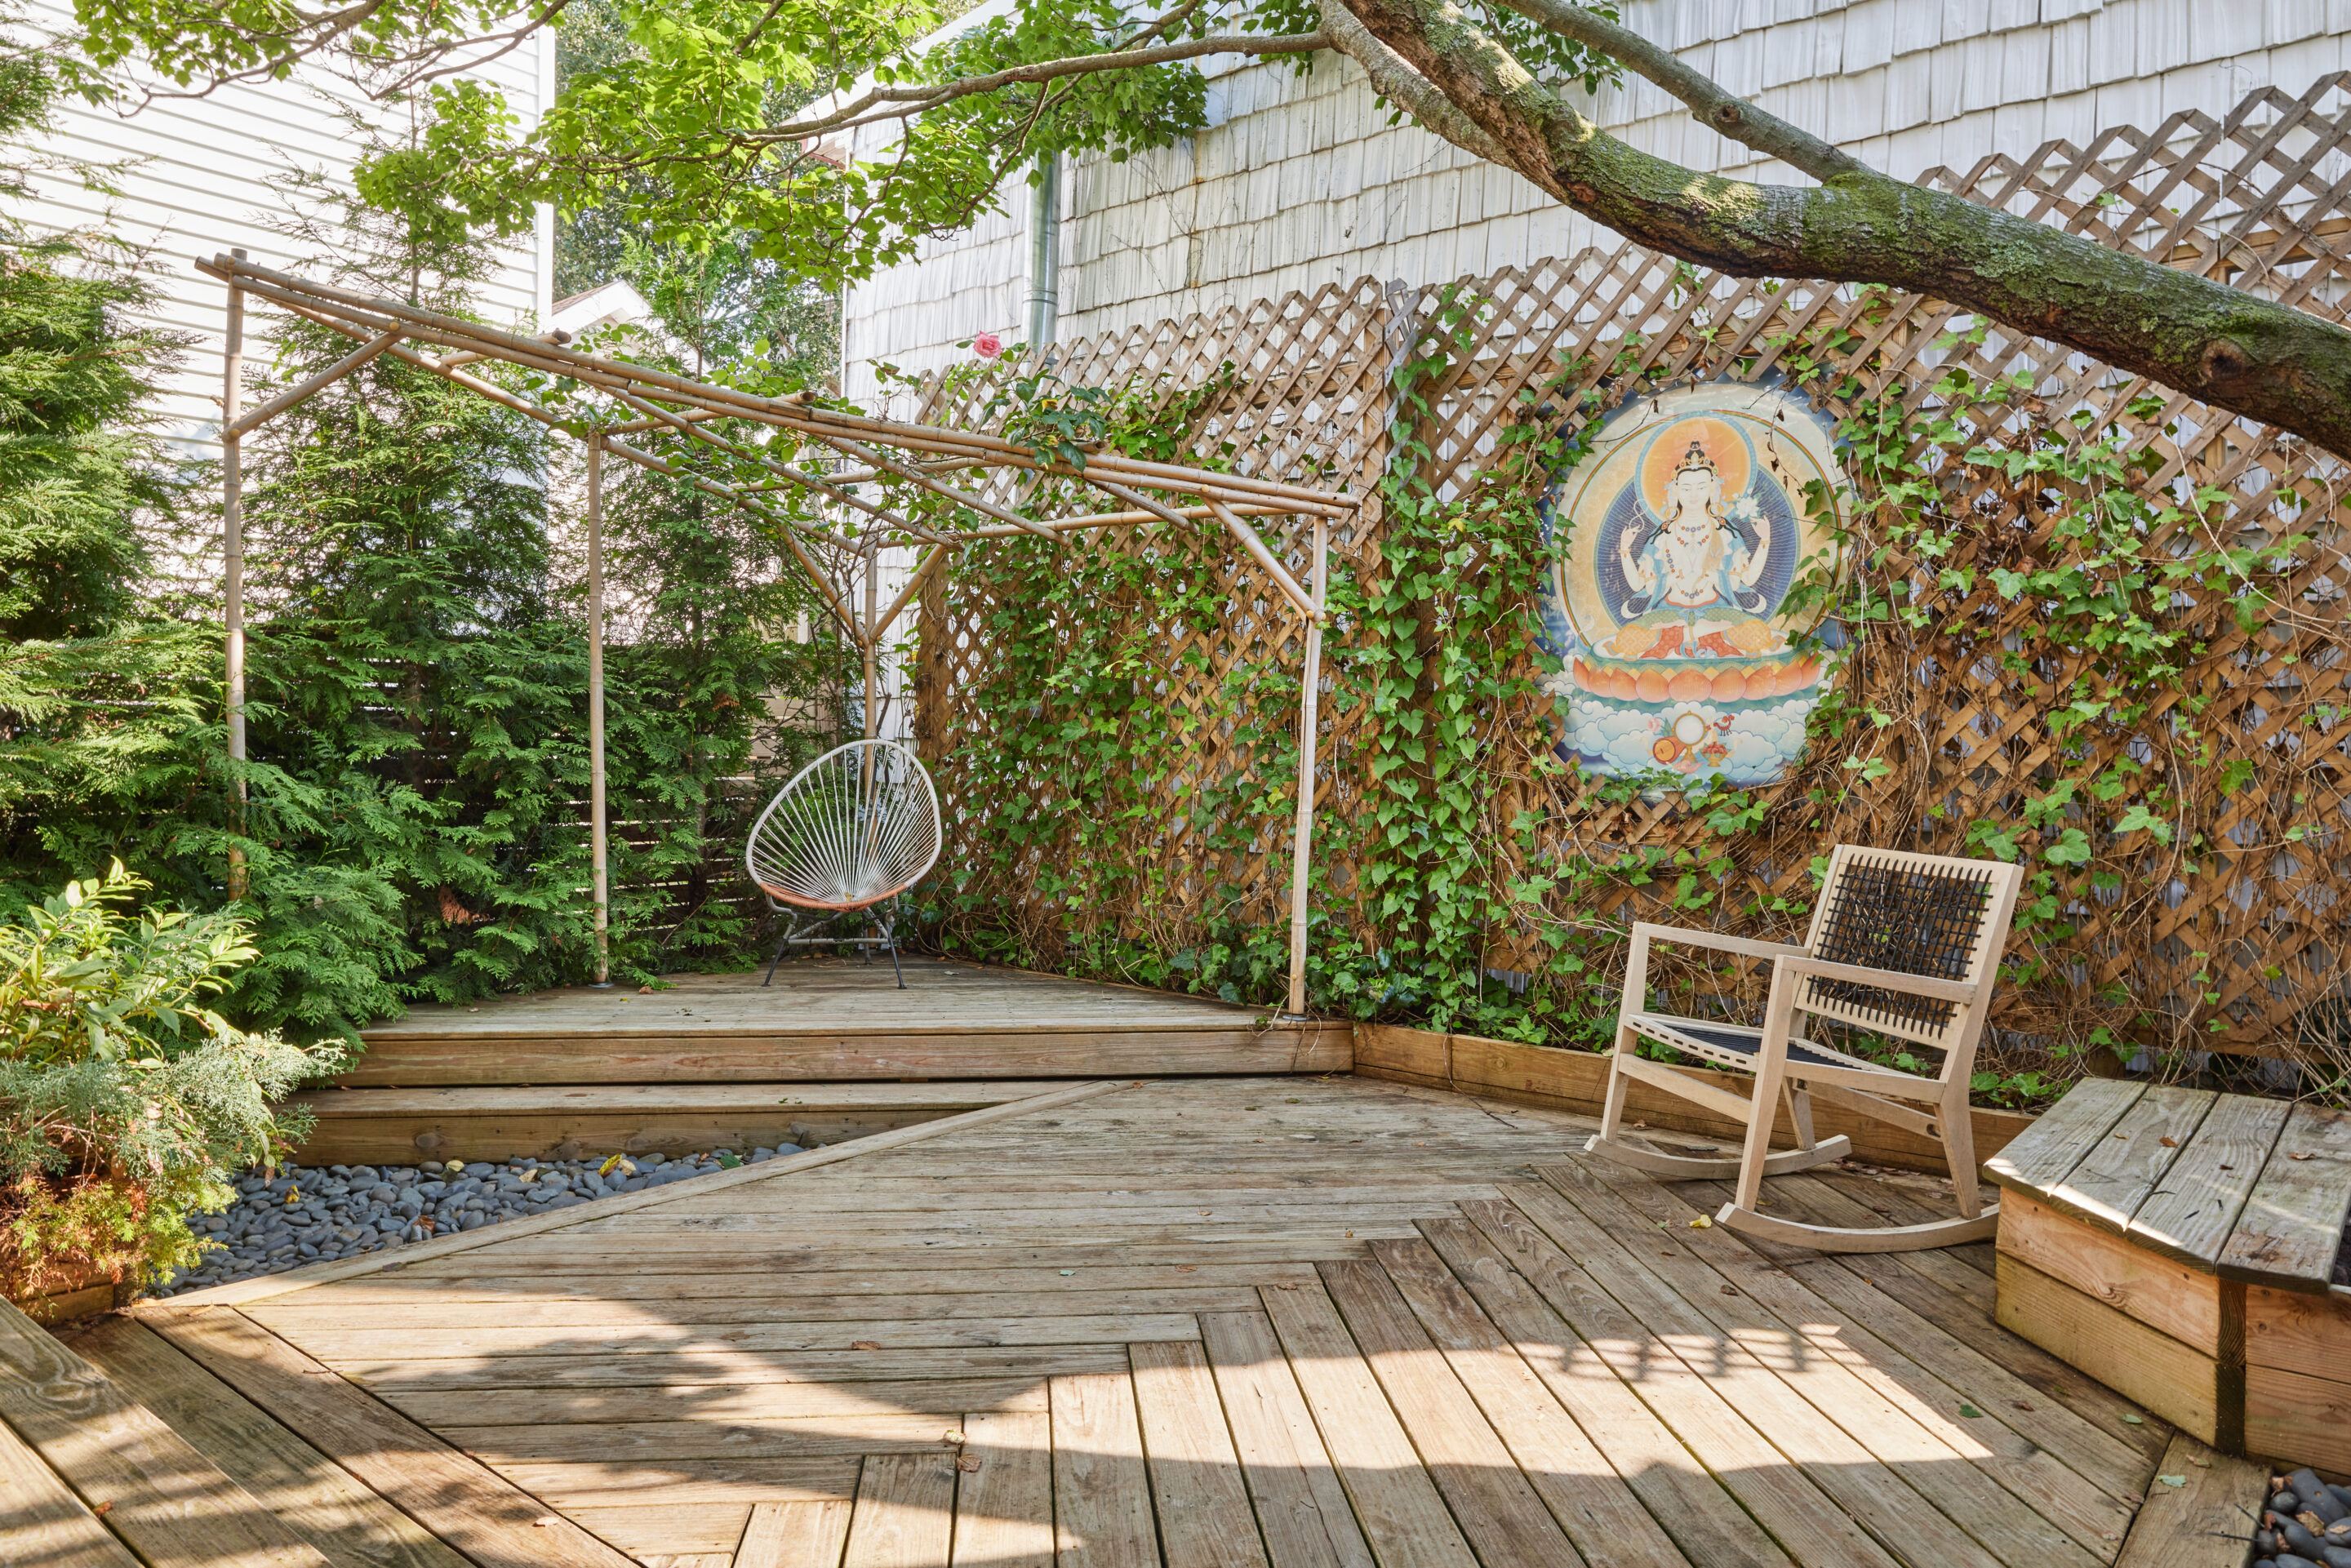 Casa Tranquila backyard with hanging swing